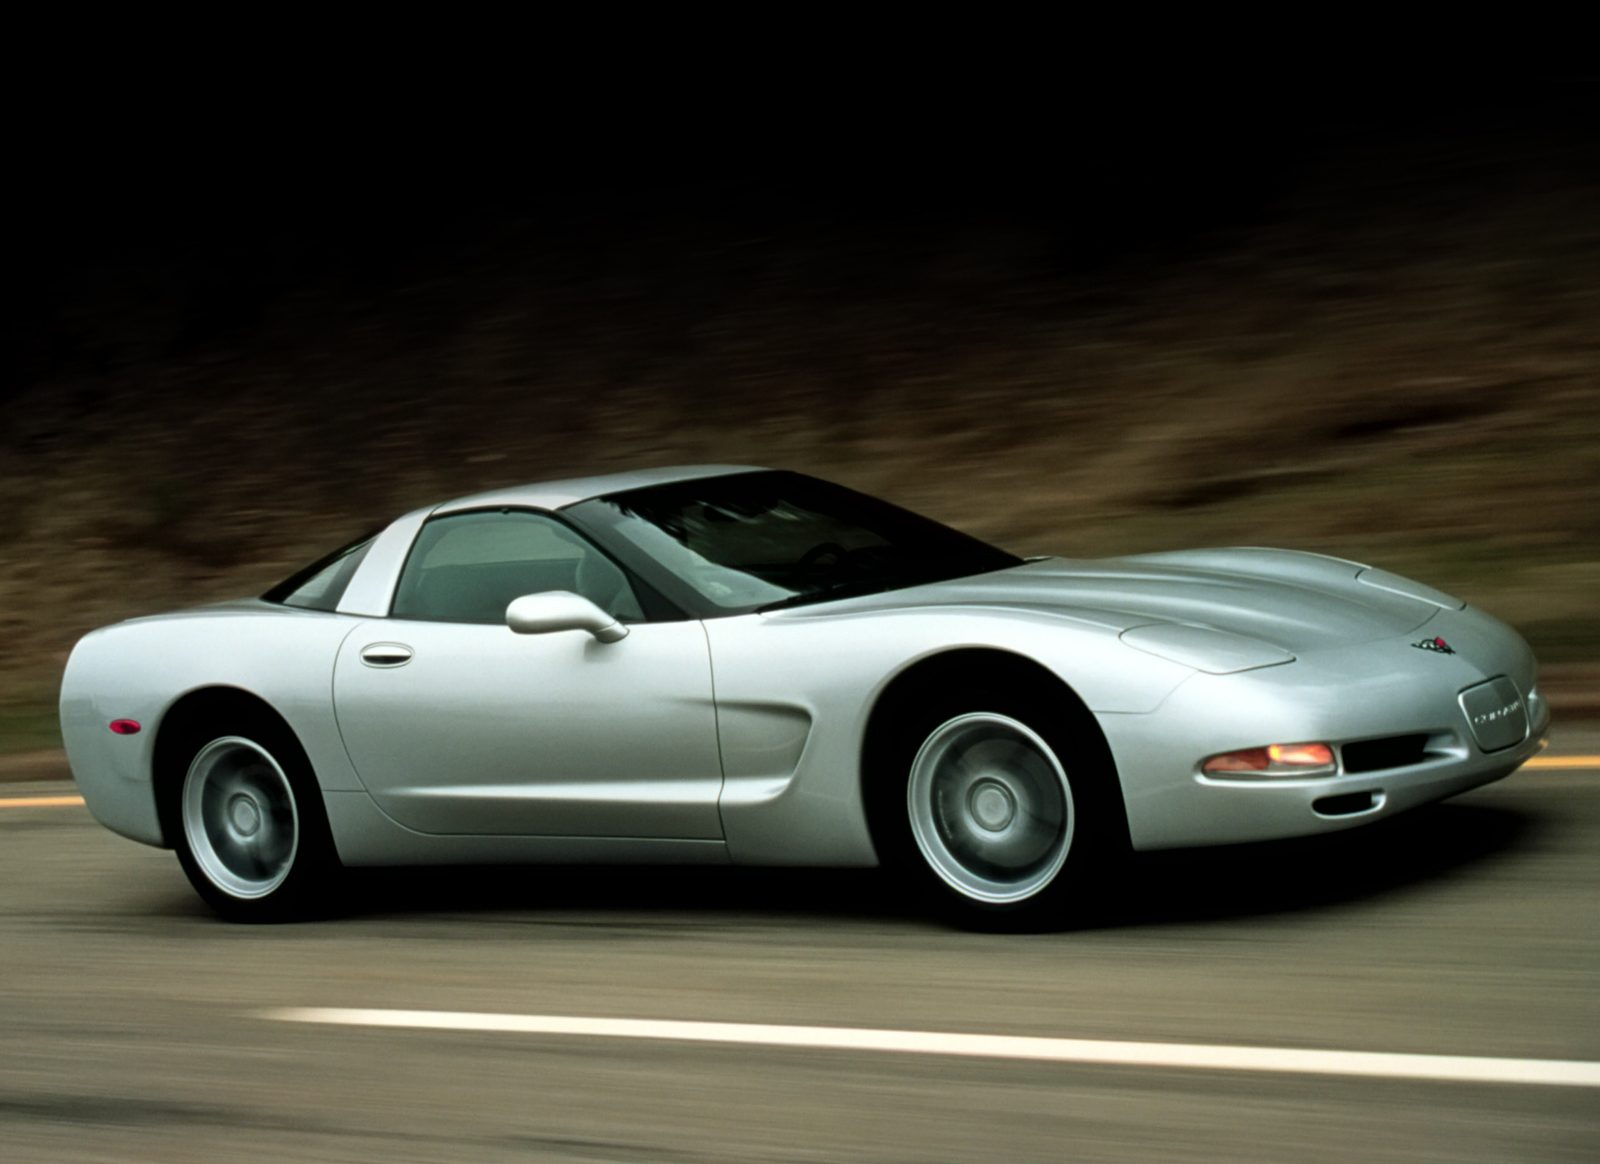 Corvette Of The Day: 2001 Chevrolet Corvette